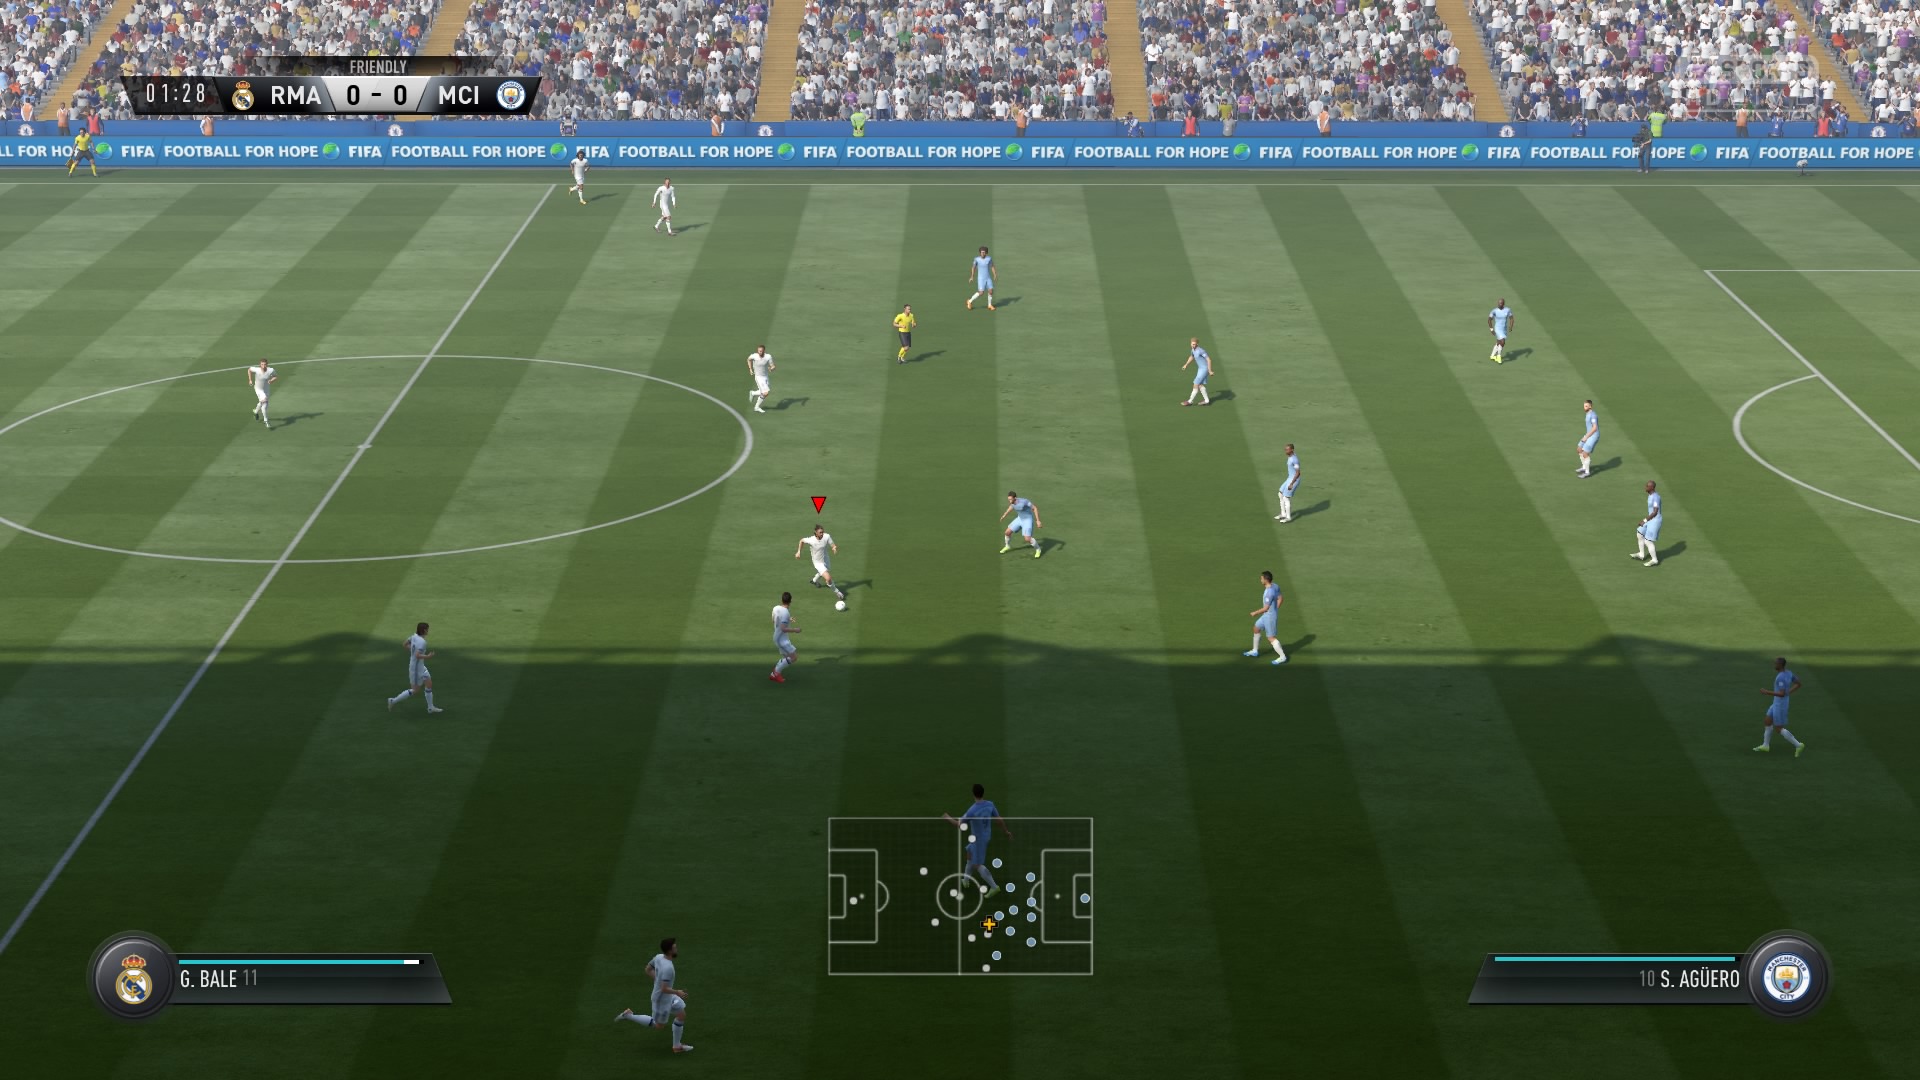 FIFA 17 DEMO Kick Off 0-0 RMA V MCI, 1st Half_11.jpg